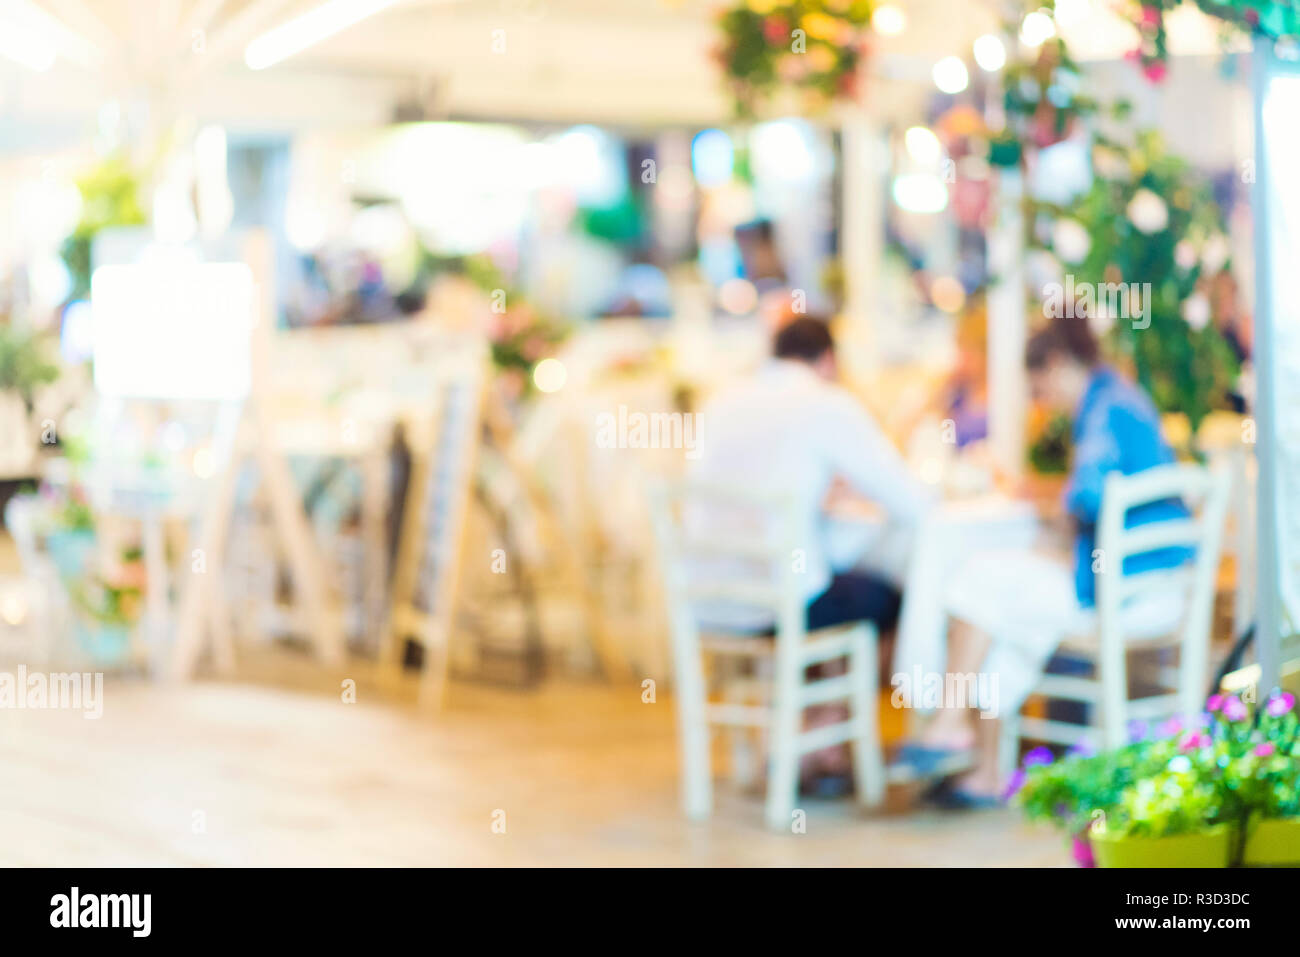 Sfocare lo sfondo della scena in un ristorante, offuscata irriconoscibile persone sedute al tavolo in giardino Foto Stock